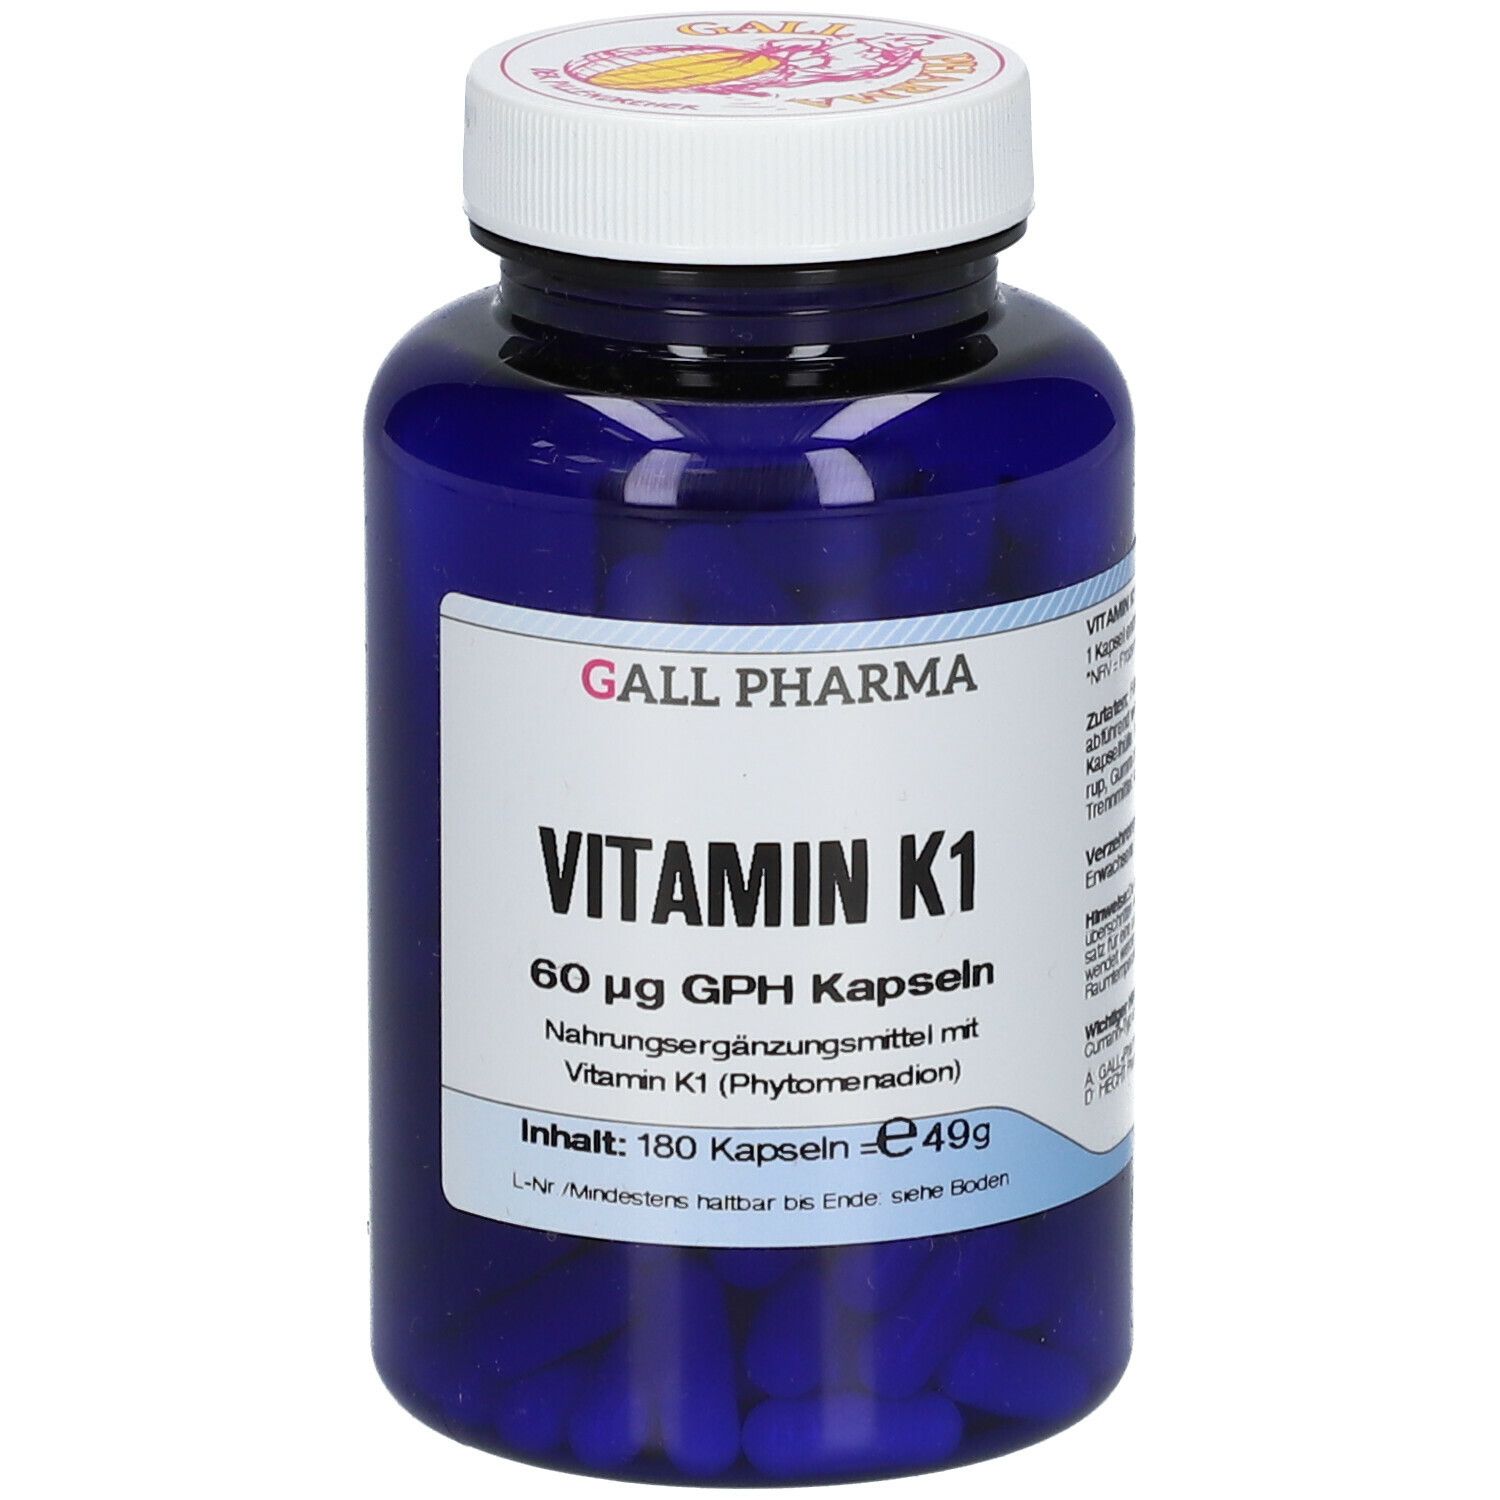 GALL PHARMA Vitamin K 1 60 µg GPH Kapseln